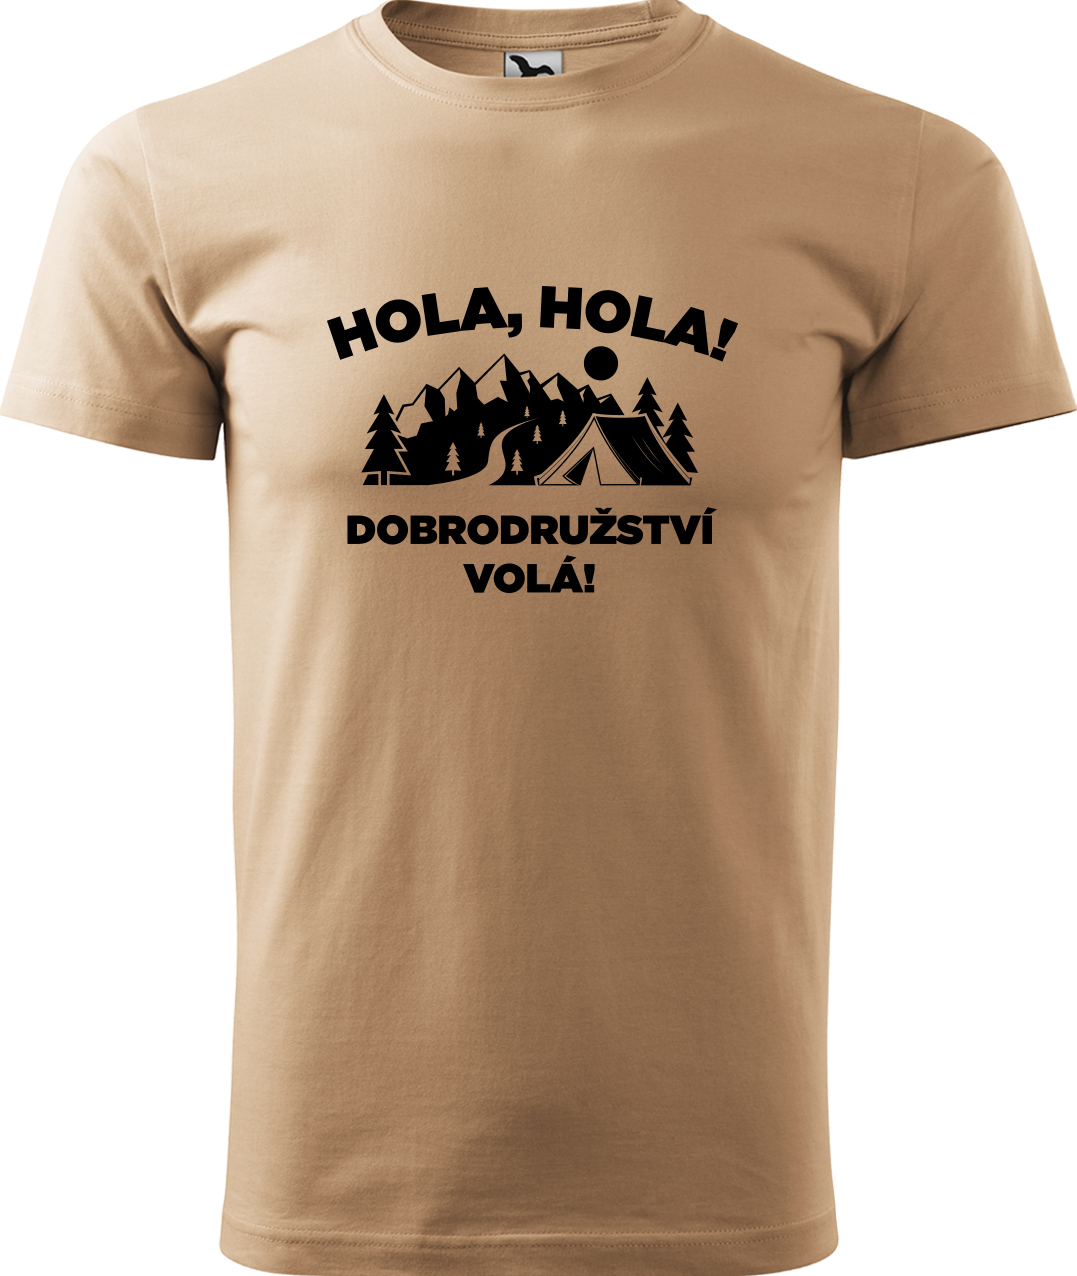 Pánské cestovatelské tričko - Hola hola! Dobrodružství volá! Velikost: M, Barva: Písková (08), Střih: pánský